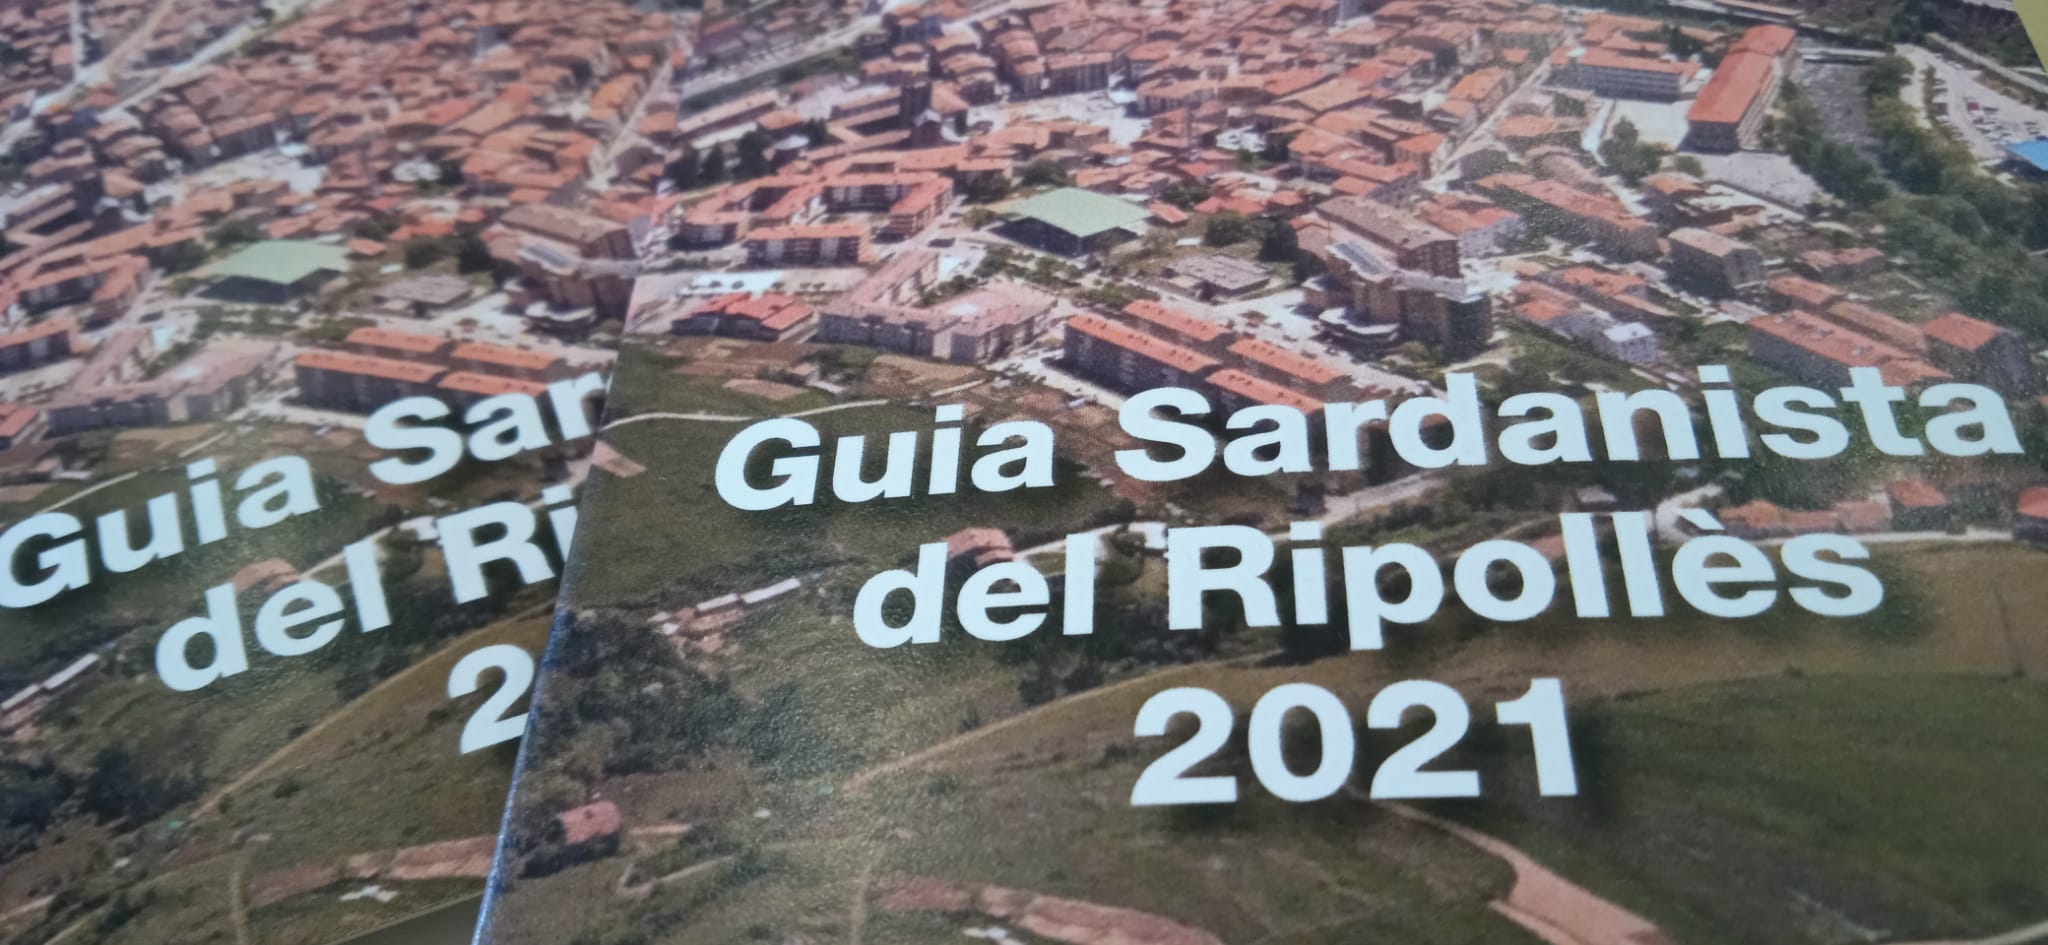 Imatge amb un pla molt tancat de dues guies sardanistes del Ripollès del 2021